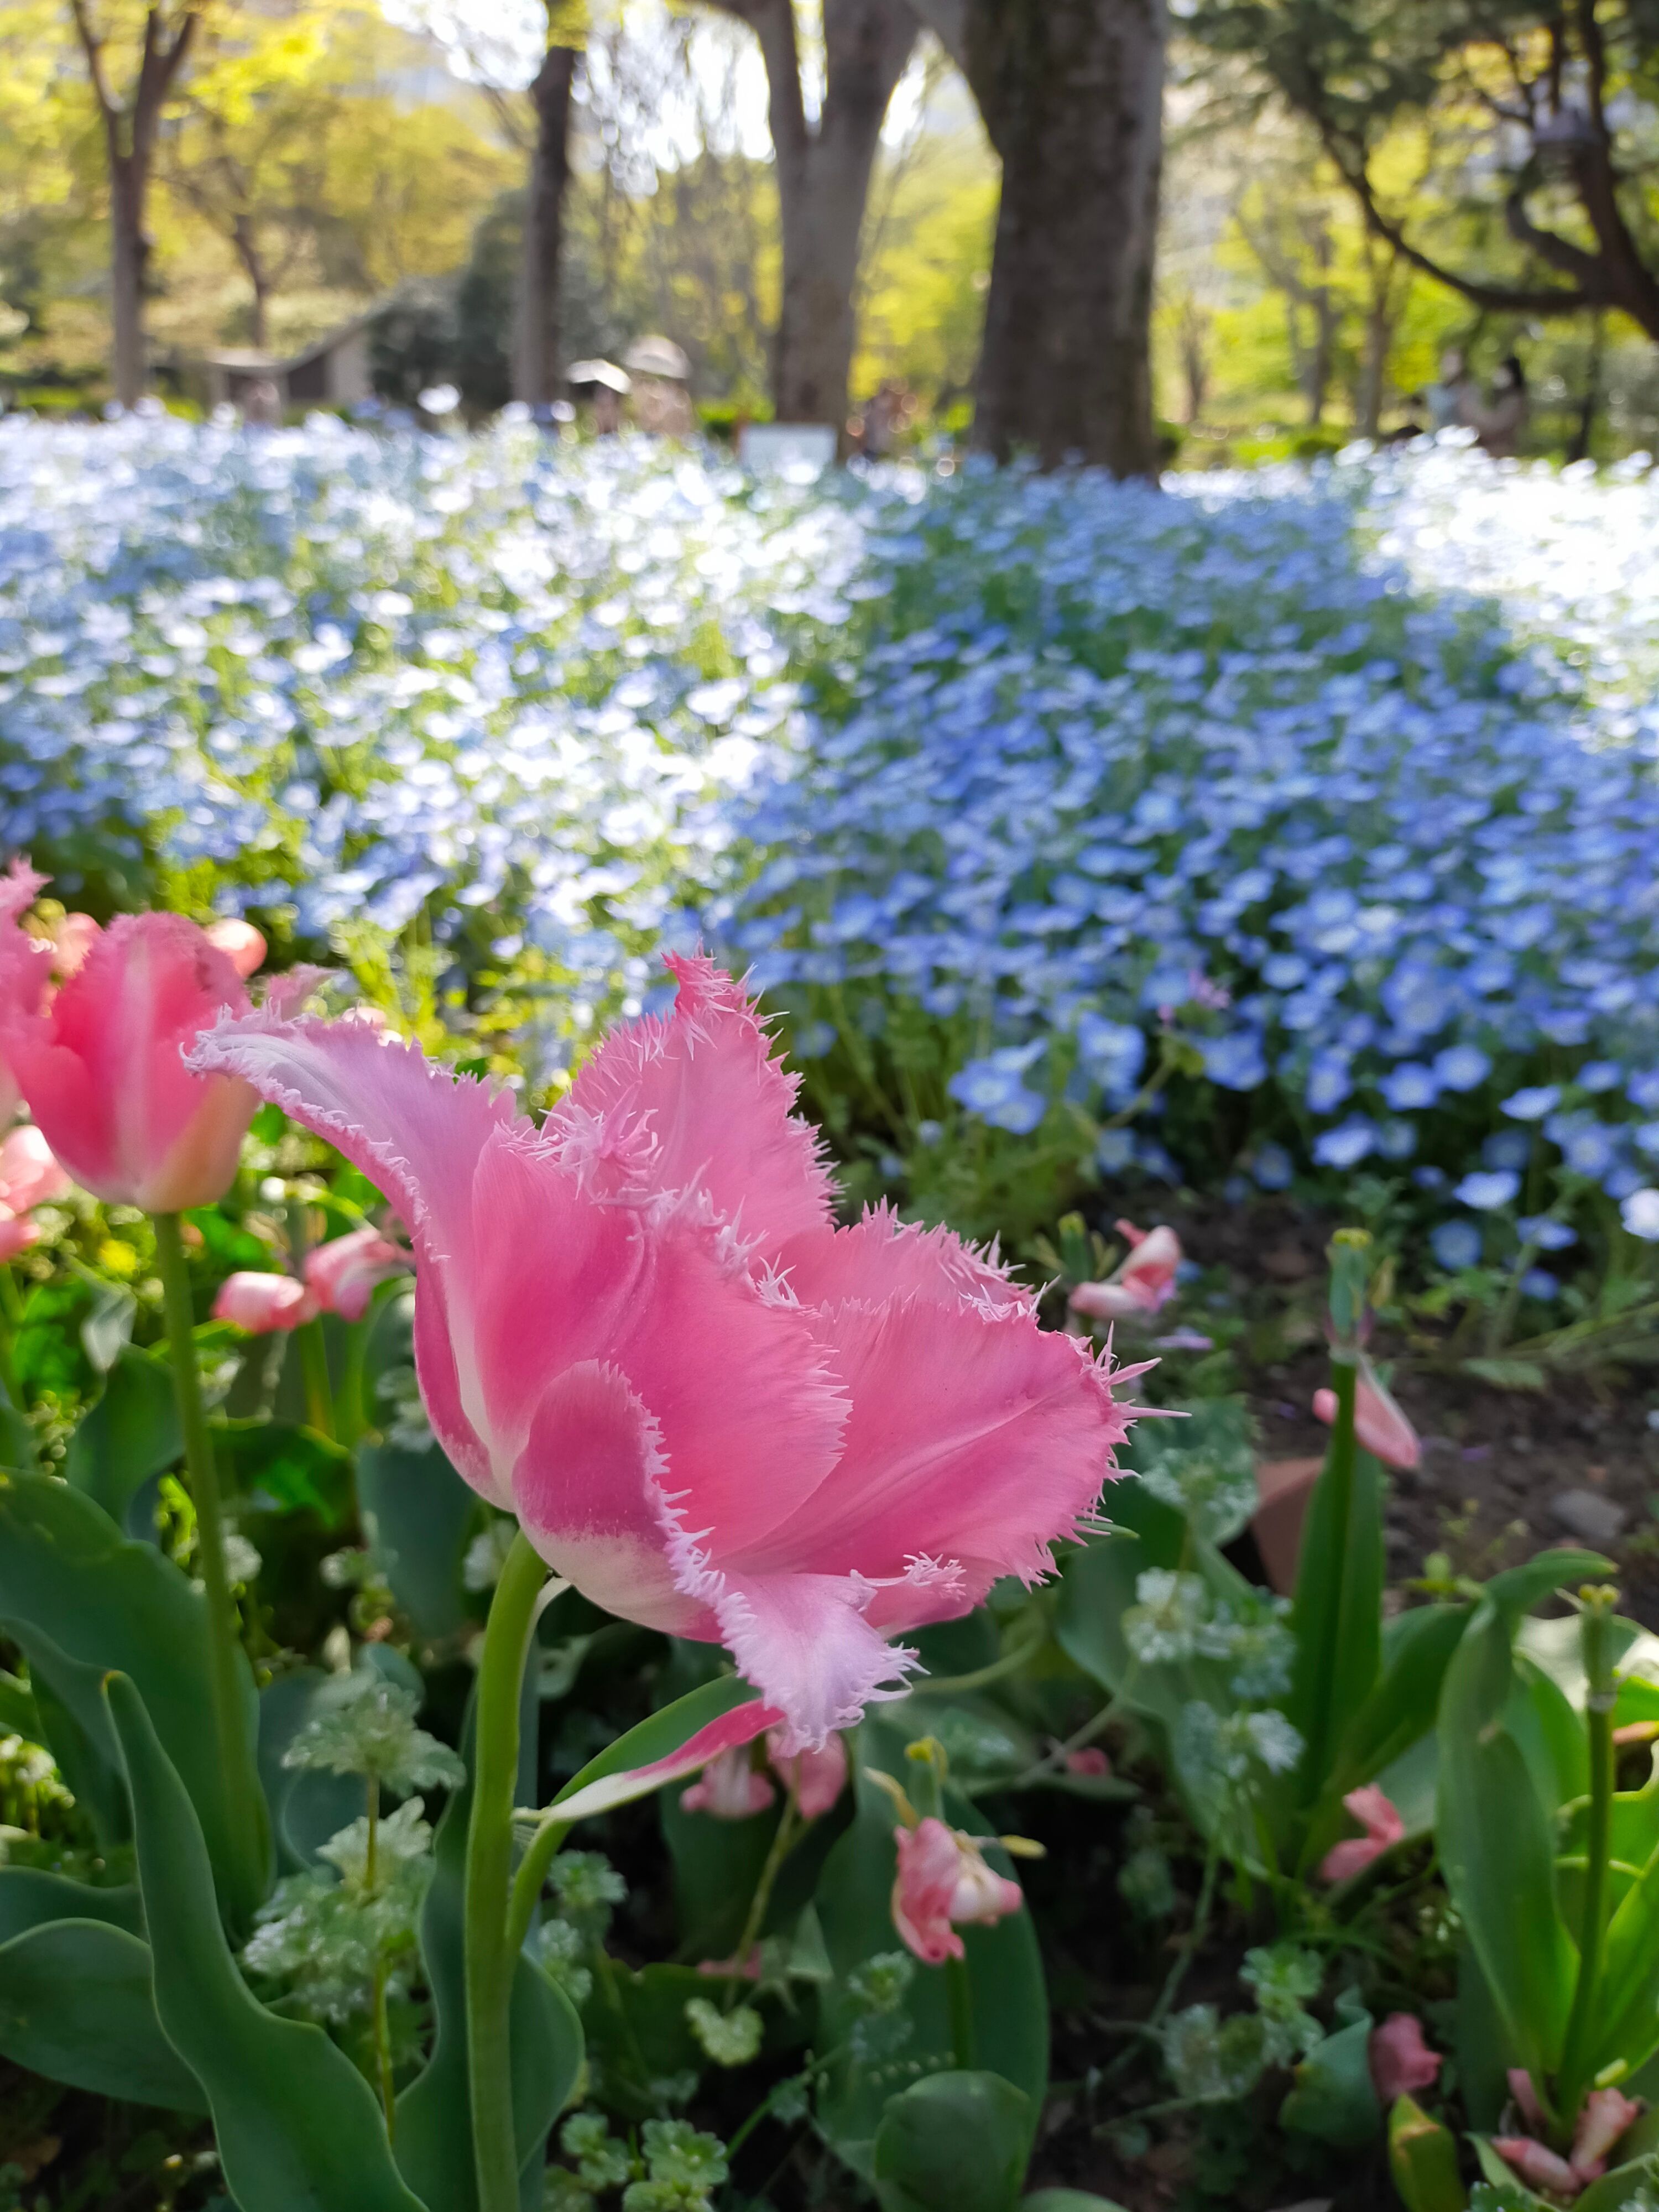 四月的東京日比谷公園色彩繽紛 不只有鬱金香還有美麗的粉蝶花海 日本板 Popdaily 波波黛莉